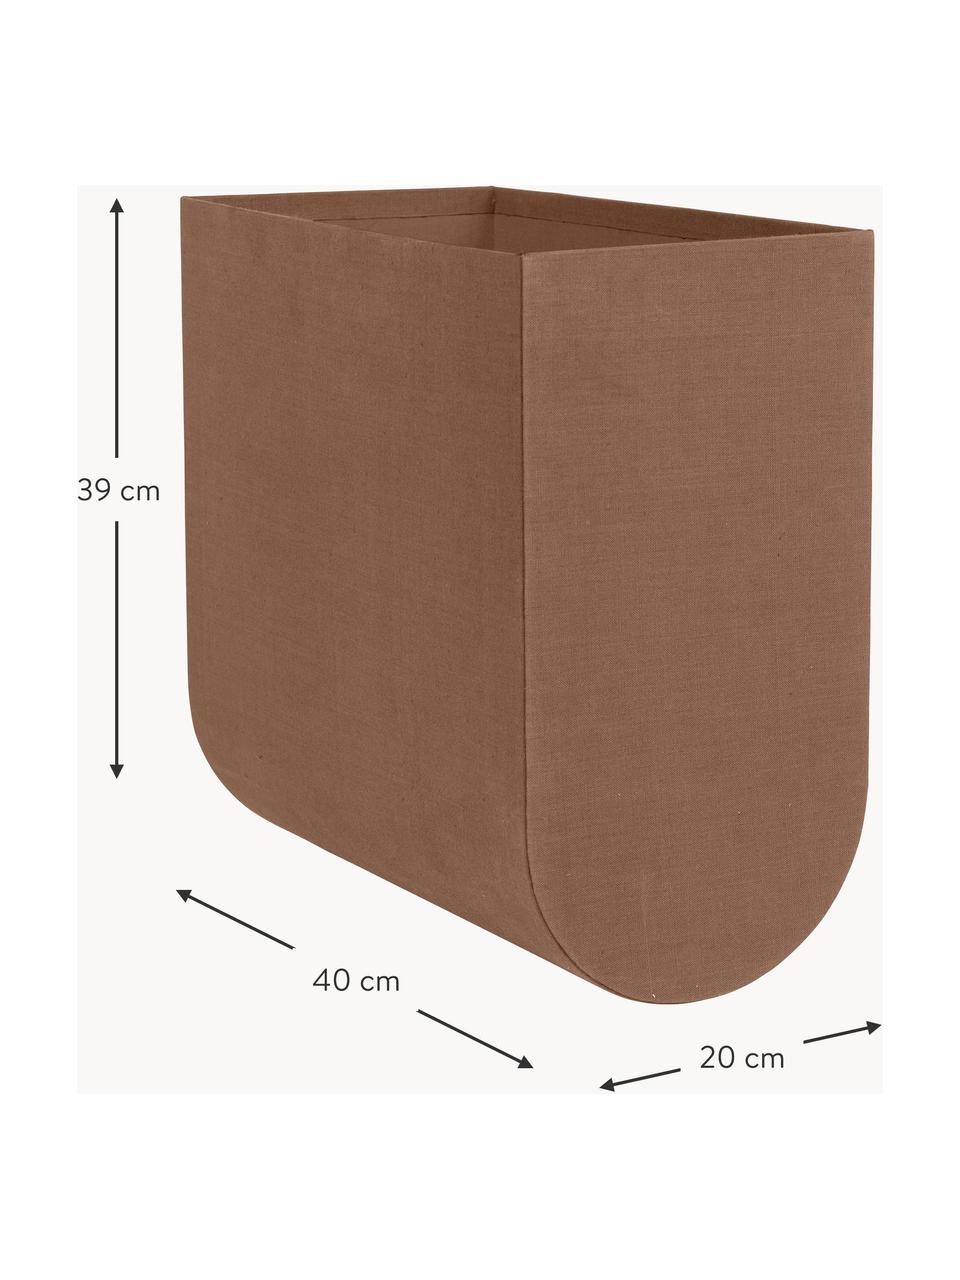 Caja artesanal Curved, An 20 cm, Funda: 100% algodón, Estructura: cartón, Marrón, An 20 x Al 39 cm